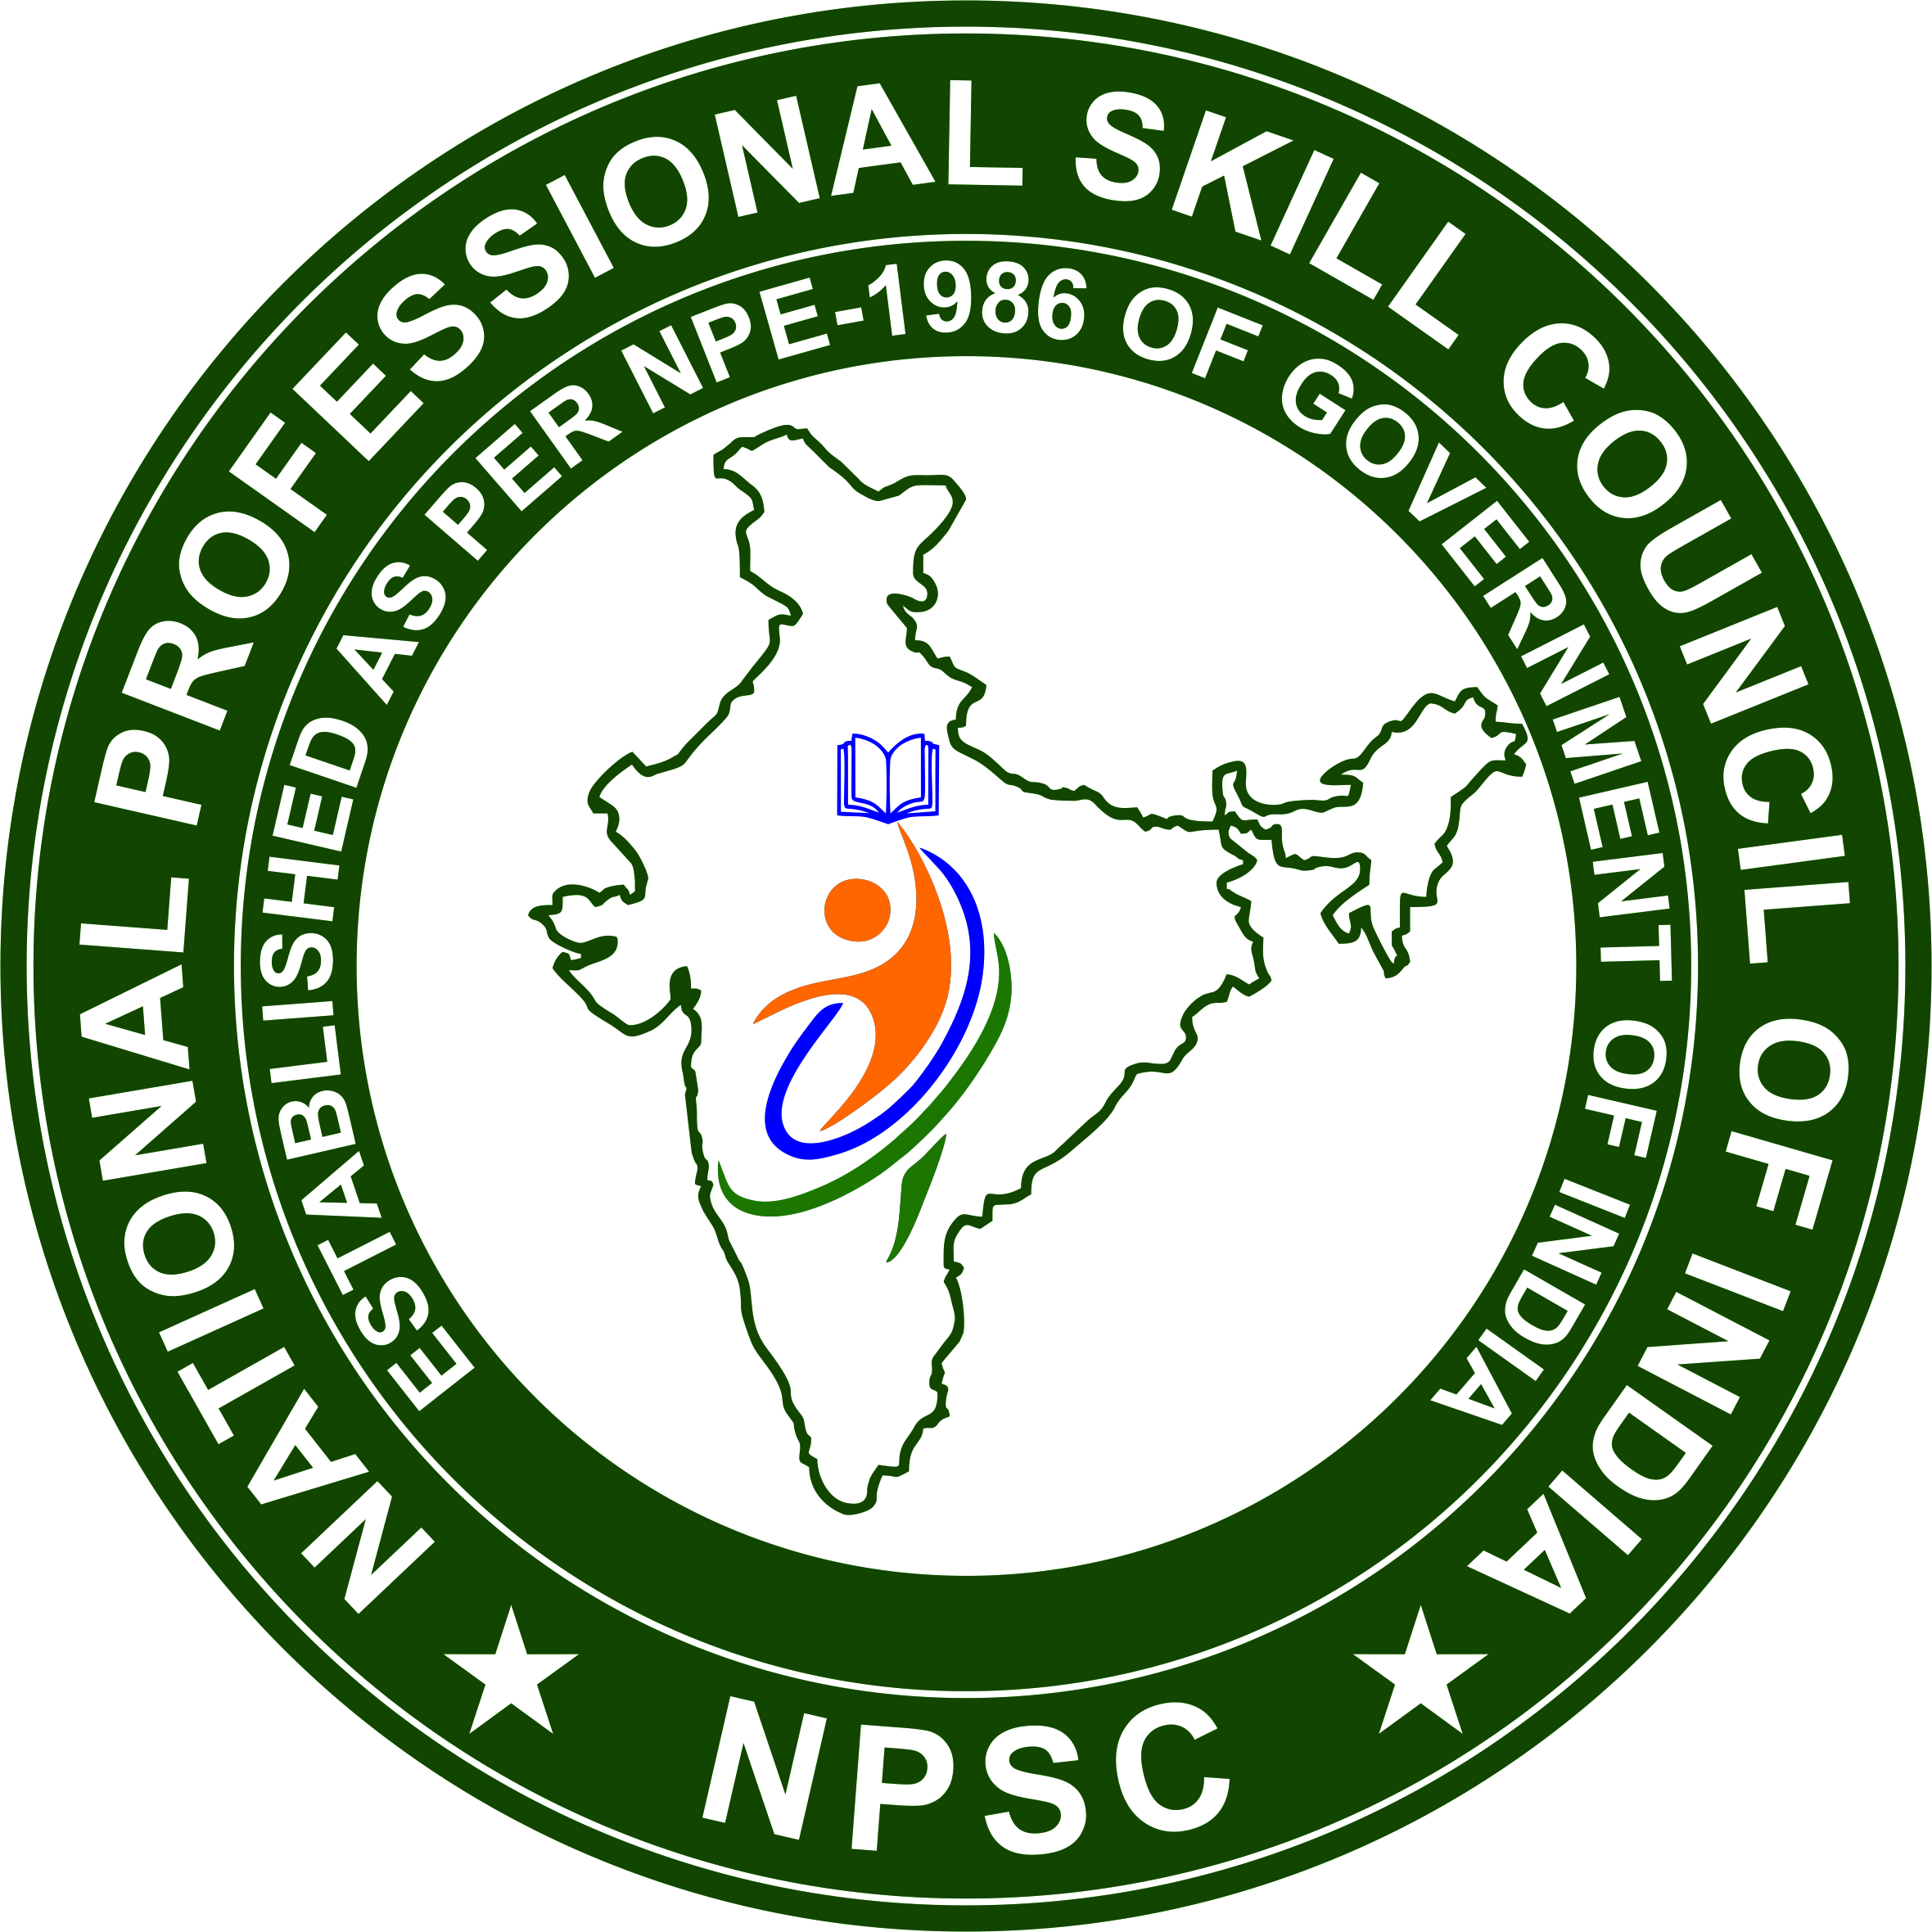 NPSC Logo